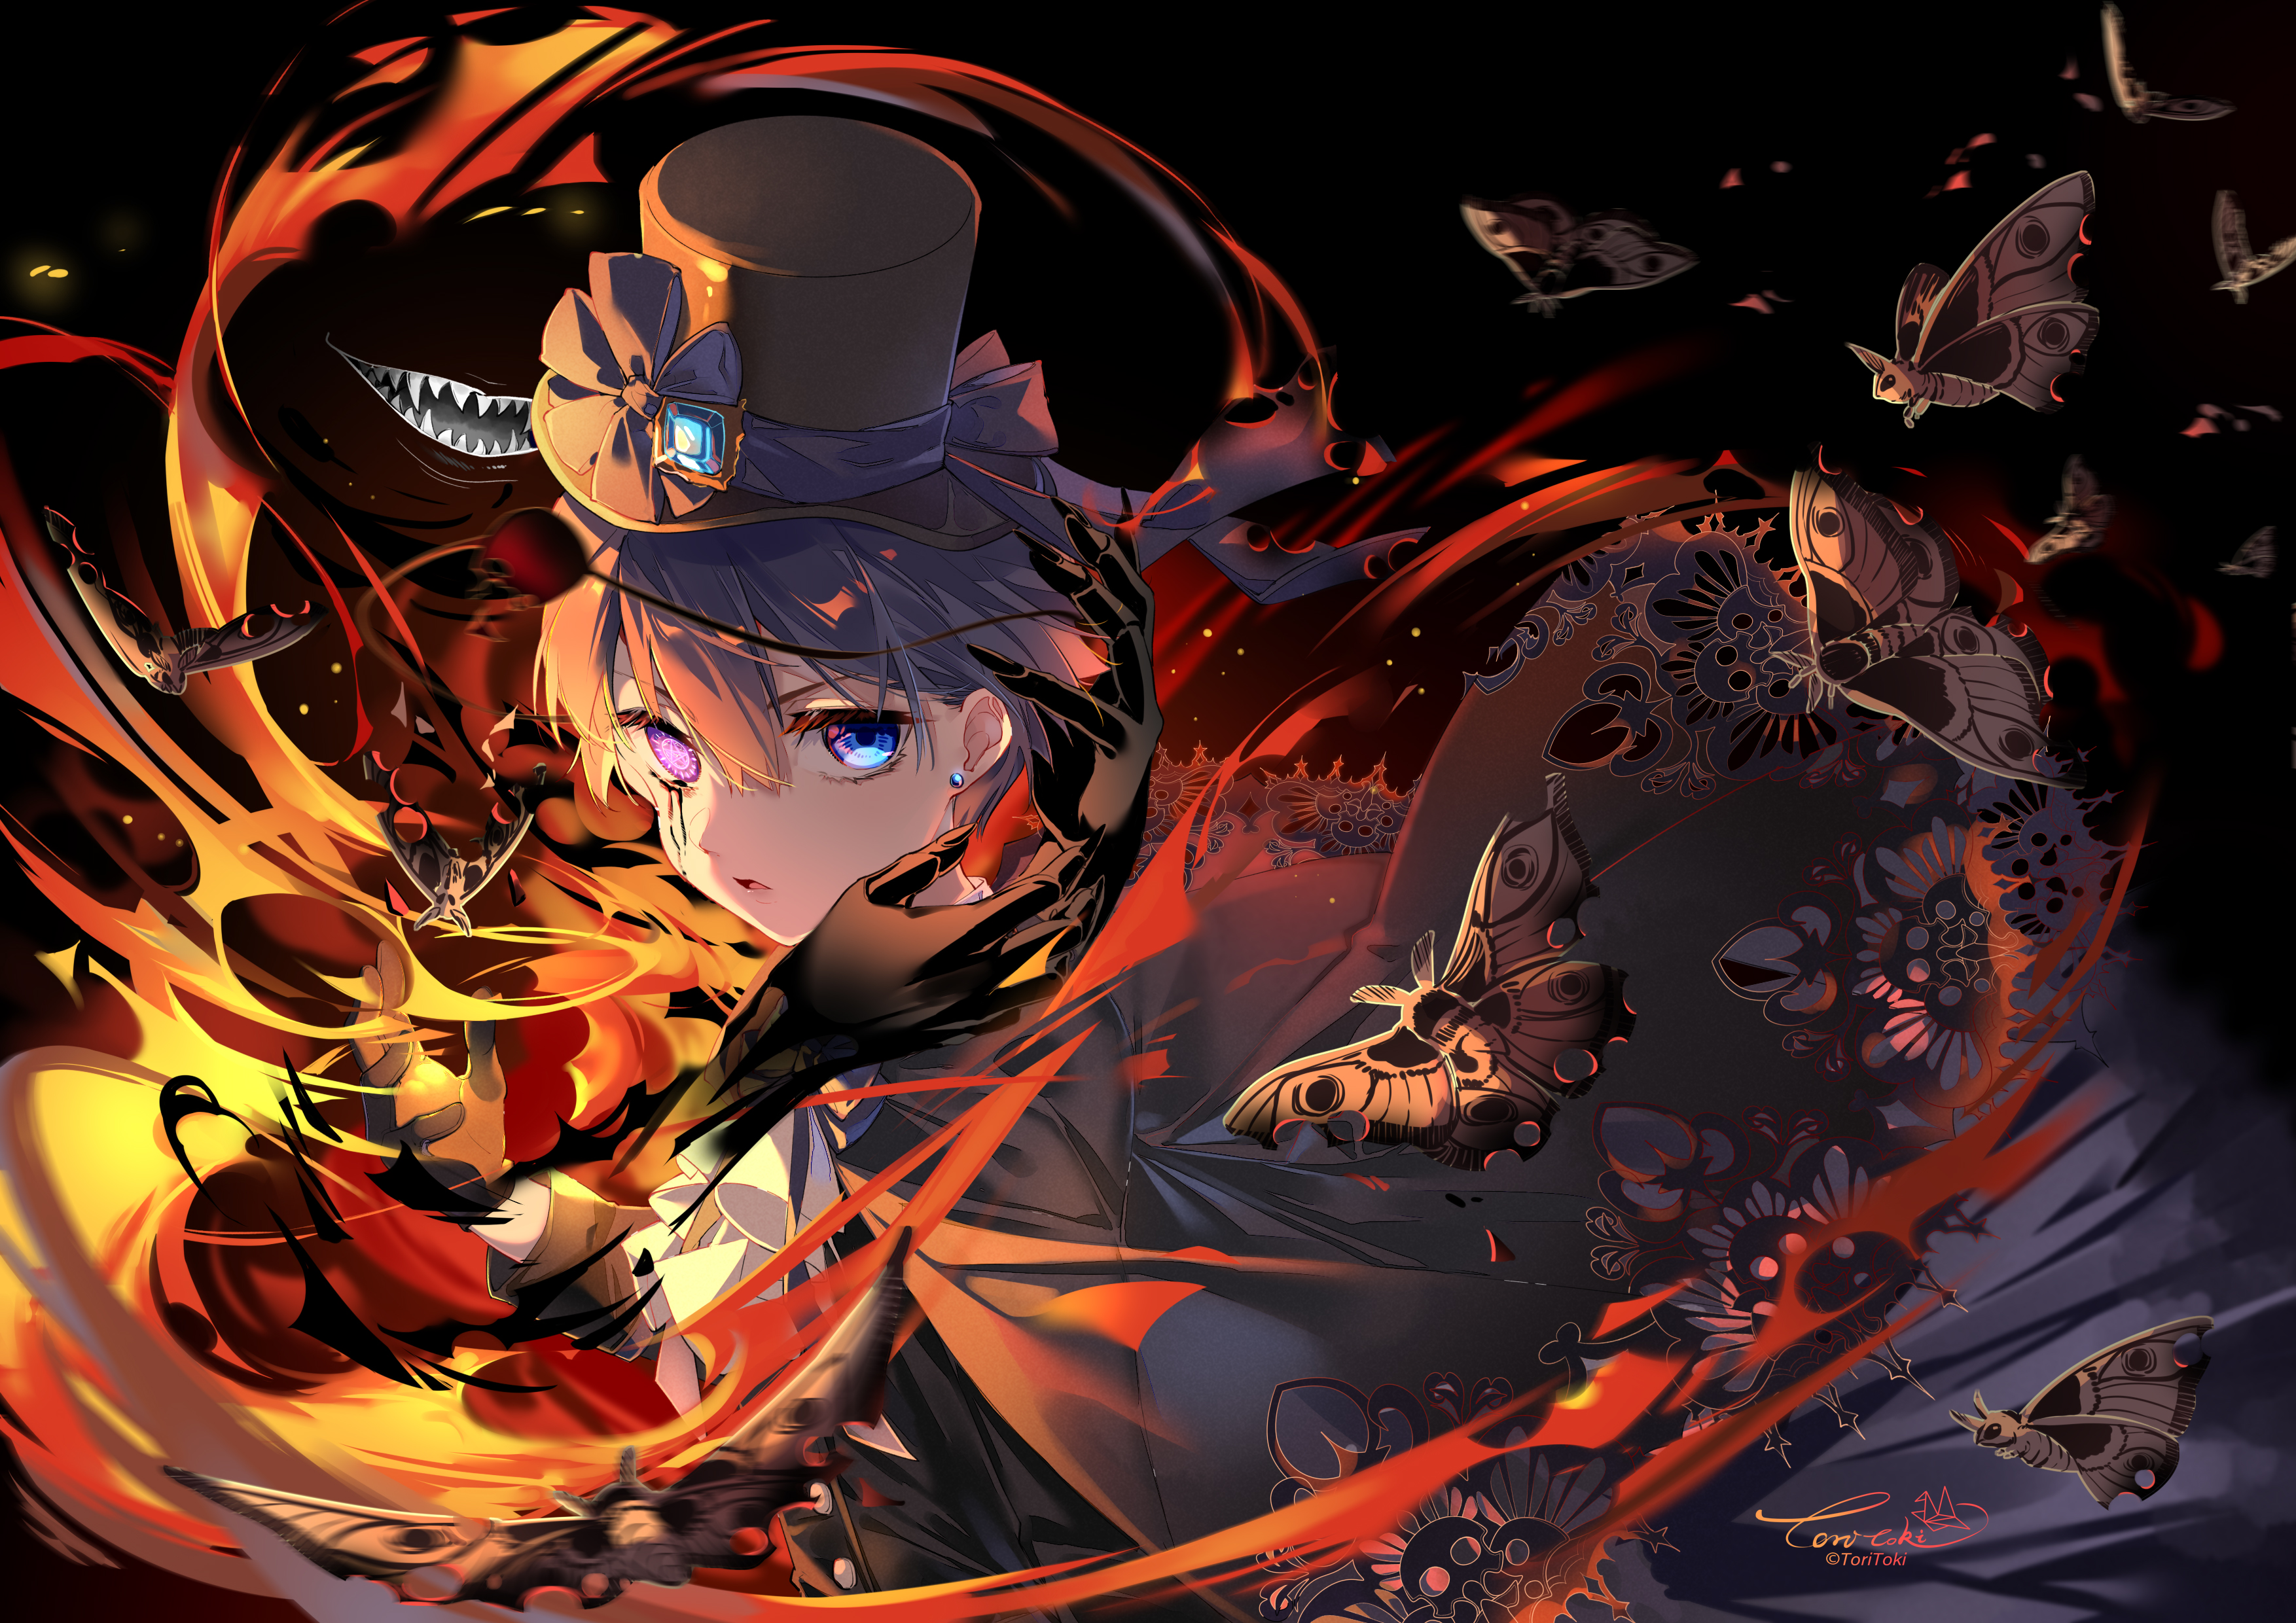 Anime Black Butler HD Wallpaper